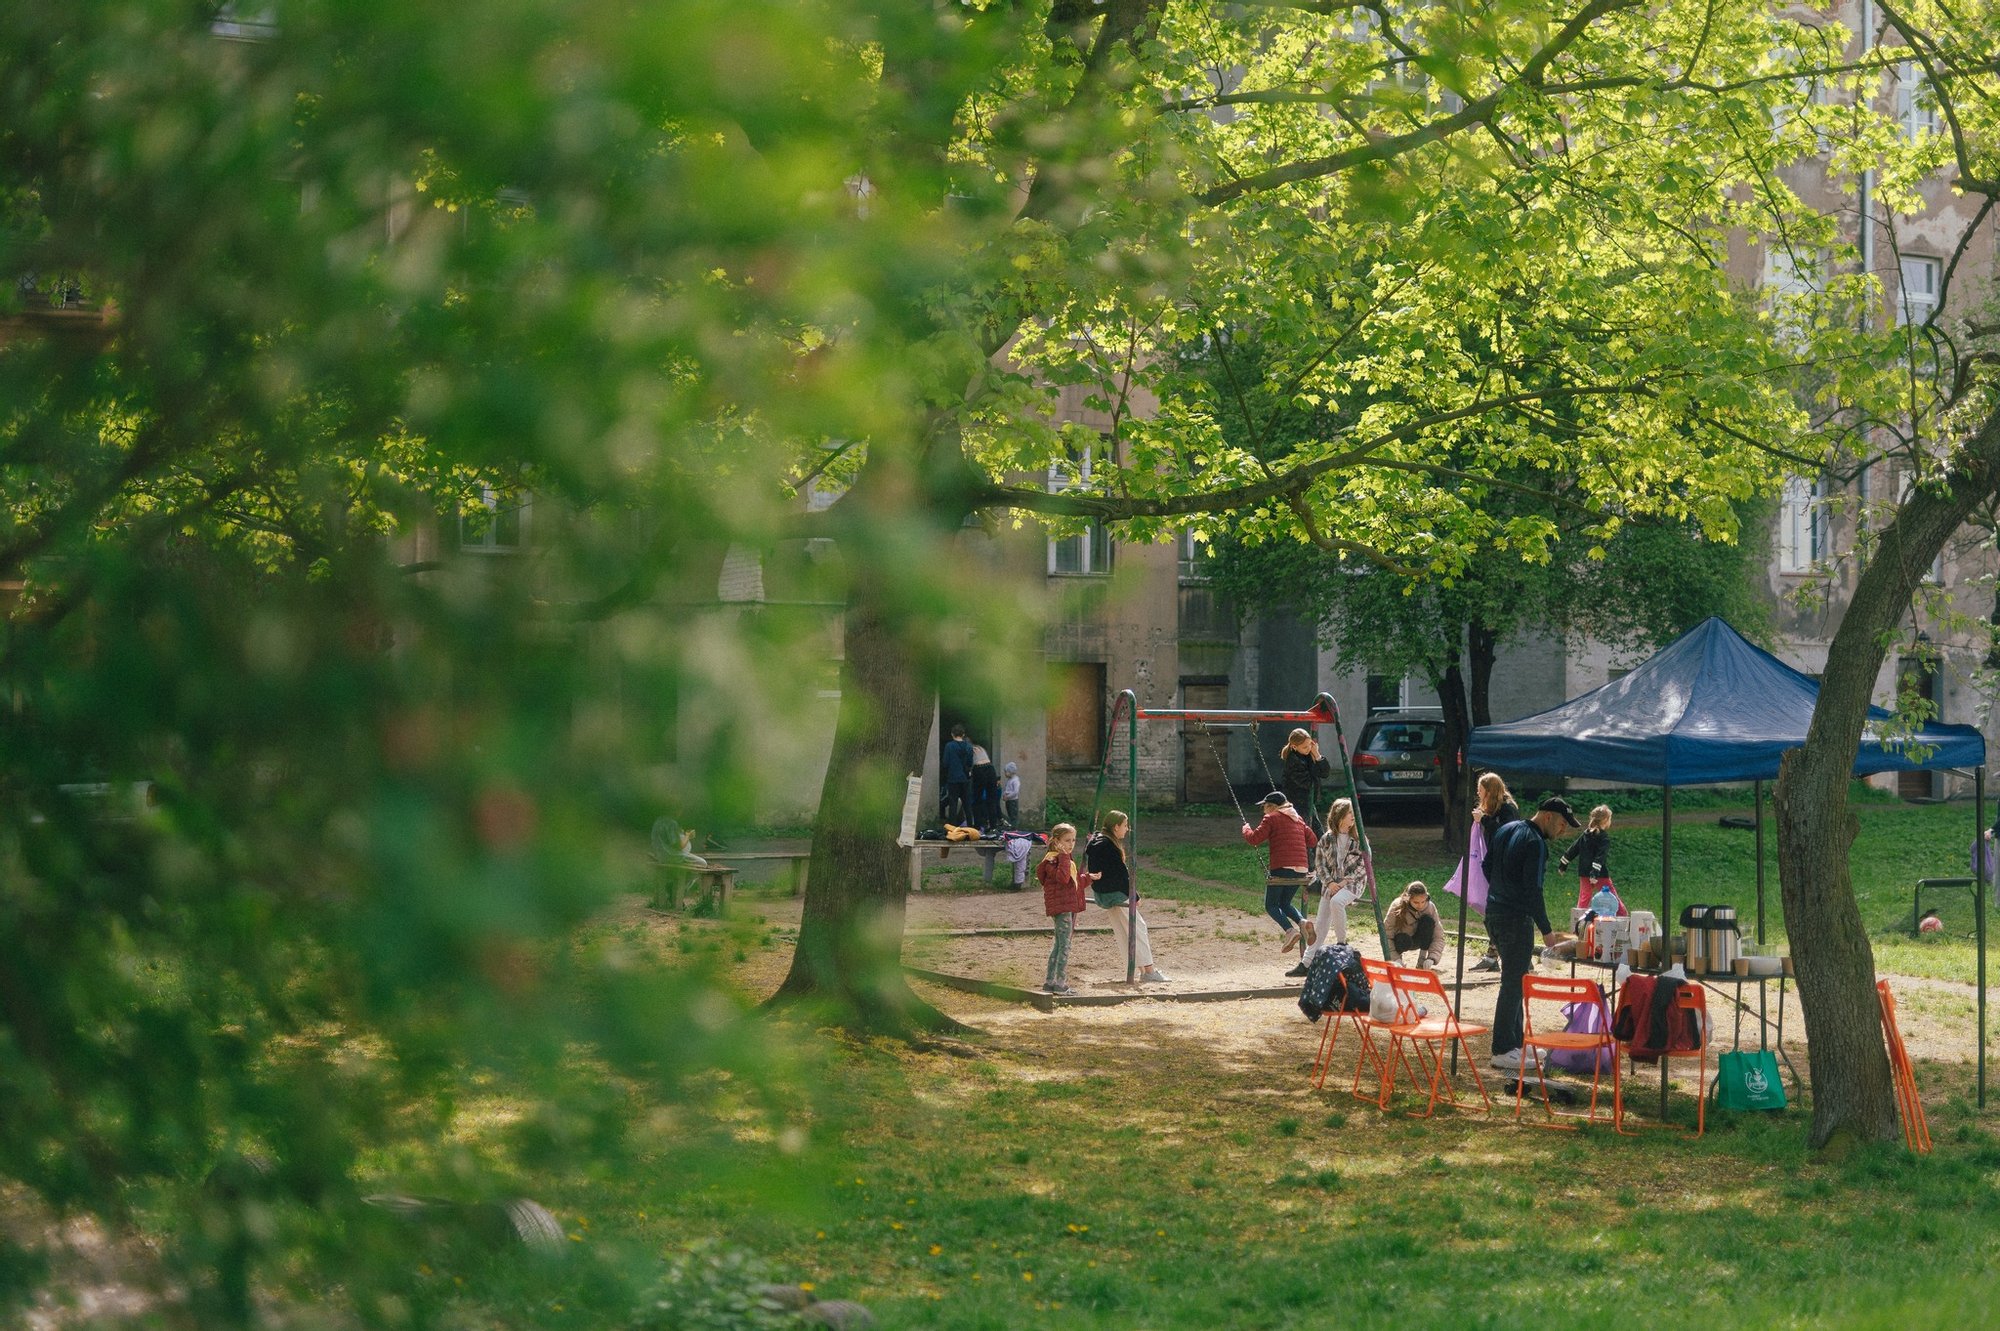 Kolorowa, pozioma fotografia przedstawiająca grupę dzieci i dorosłych spędzających czas na podwórku otoczonym kamienicami. 